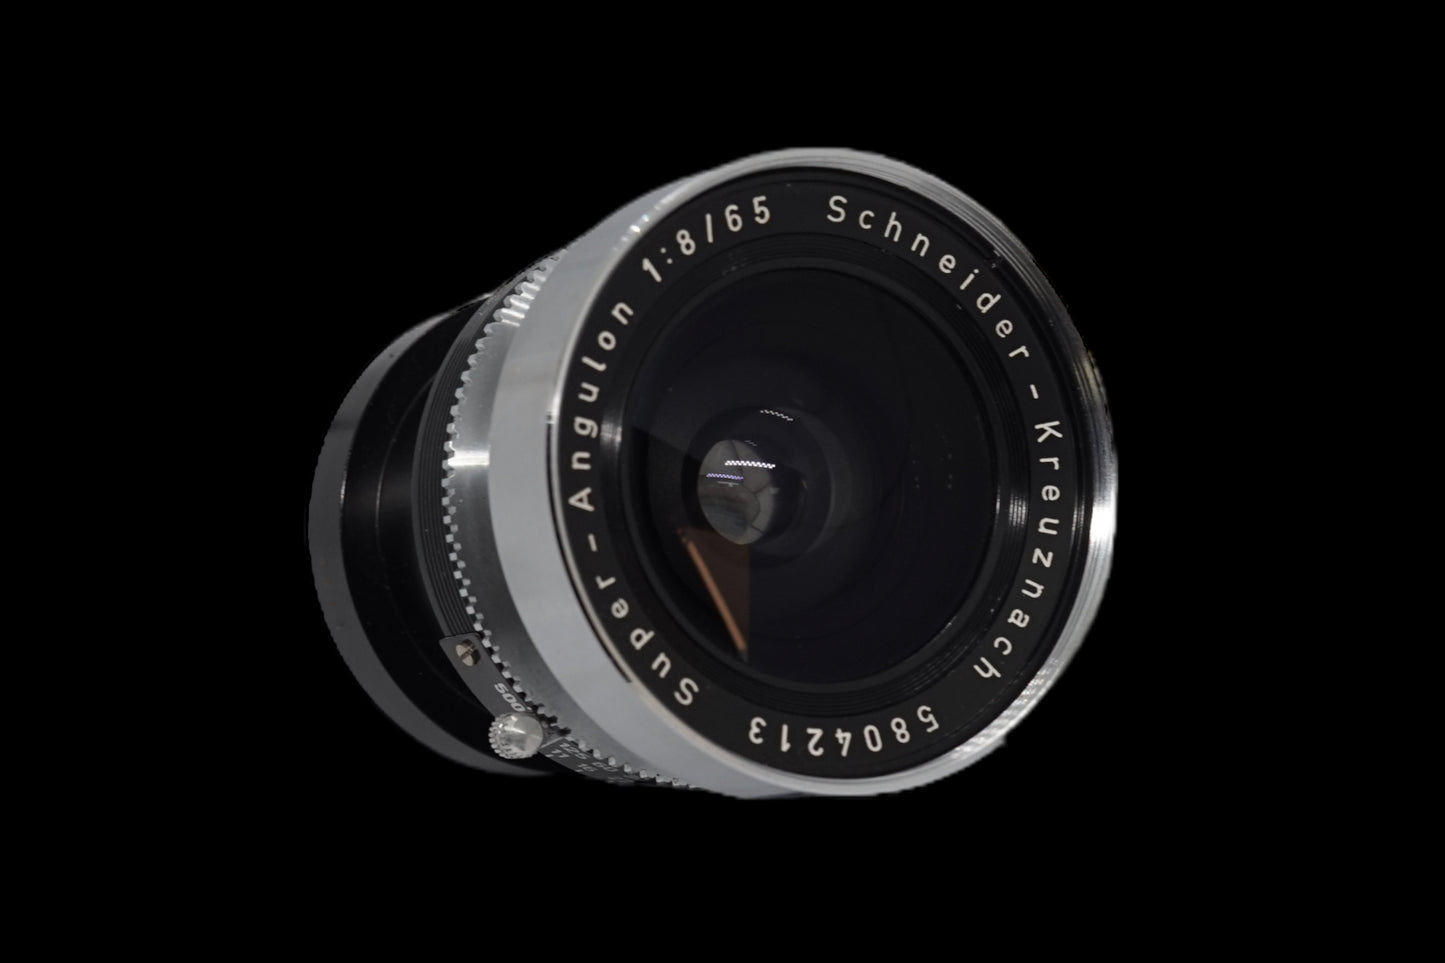 Schneider 65mm F8 Lens with Camera Setup